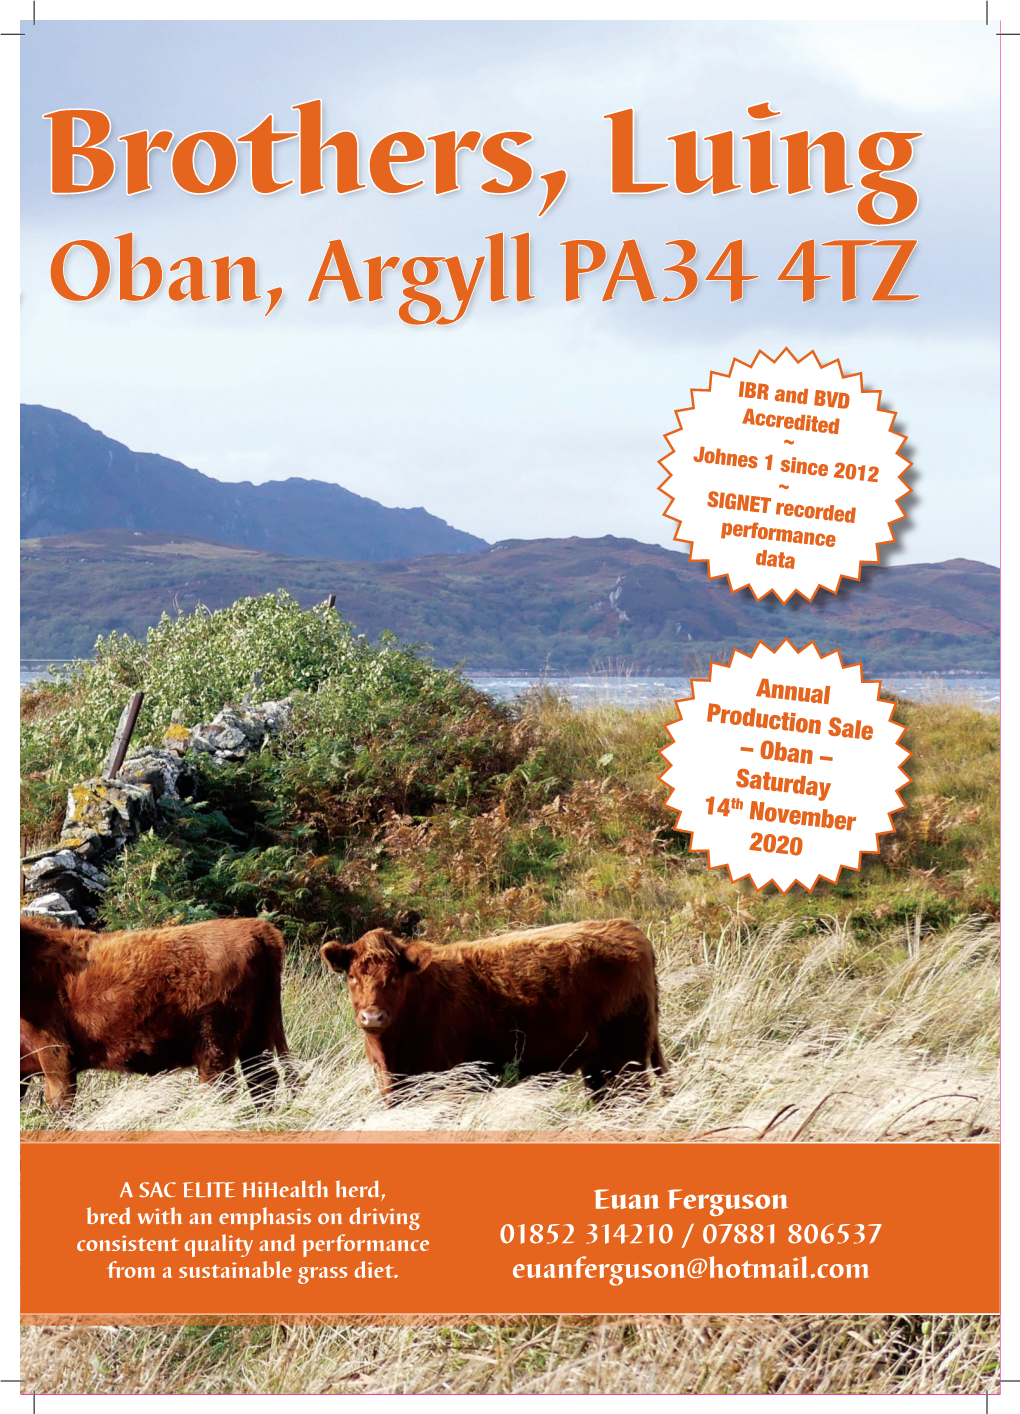 Le of Luing, Oban, Argyll PA34 4TZ